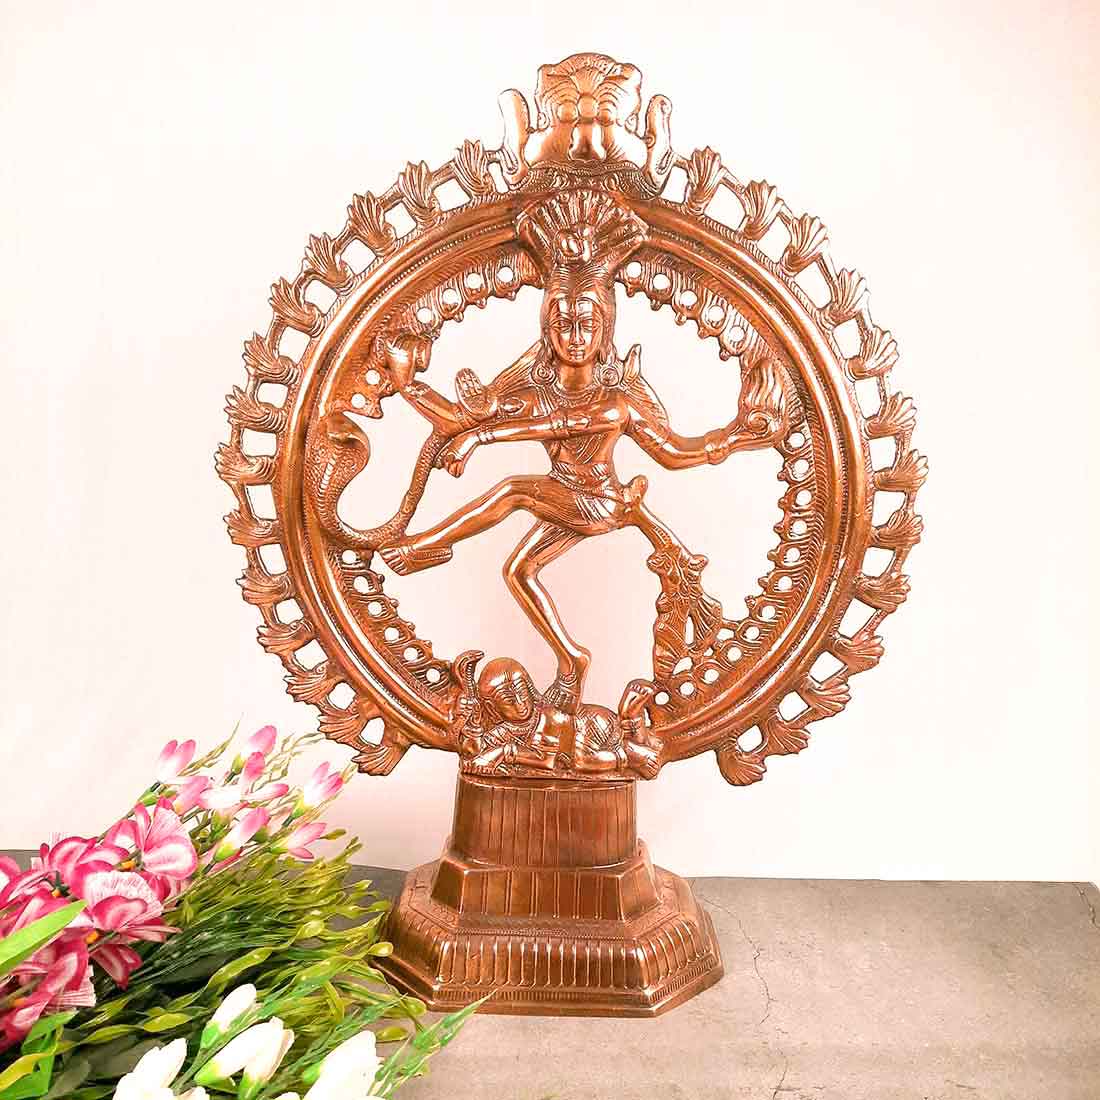 Swami Vivekananda Brass Statue (Meditation)